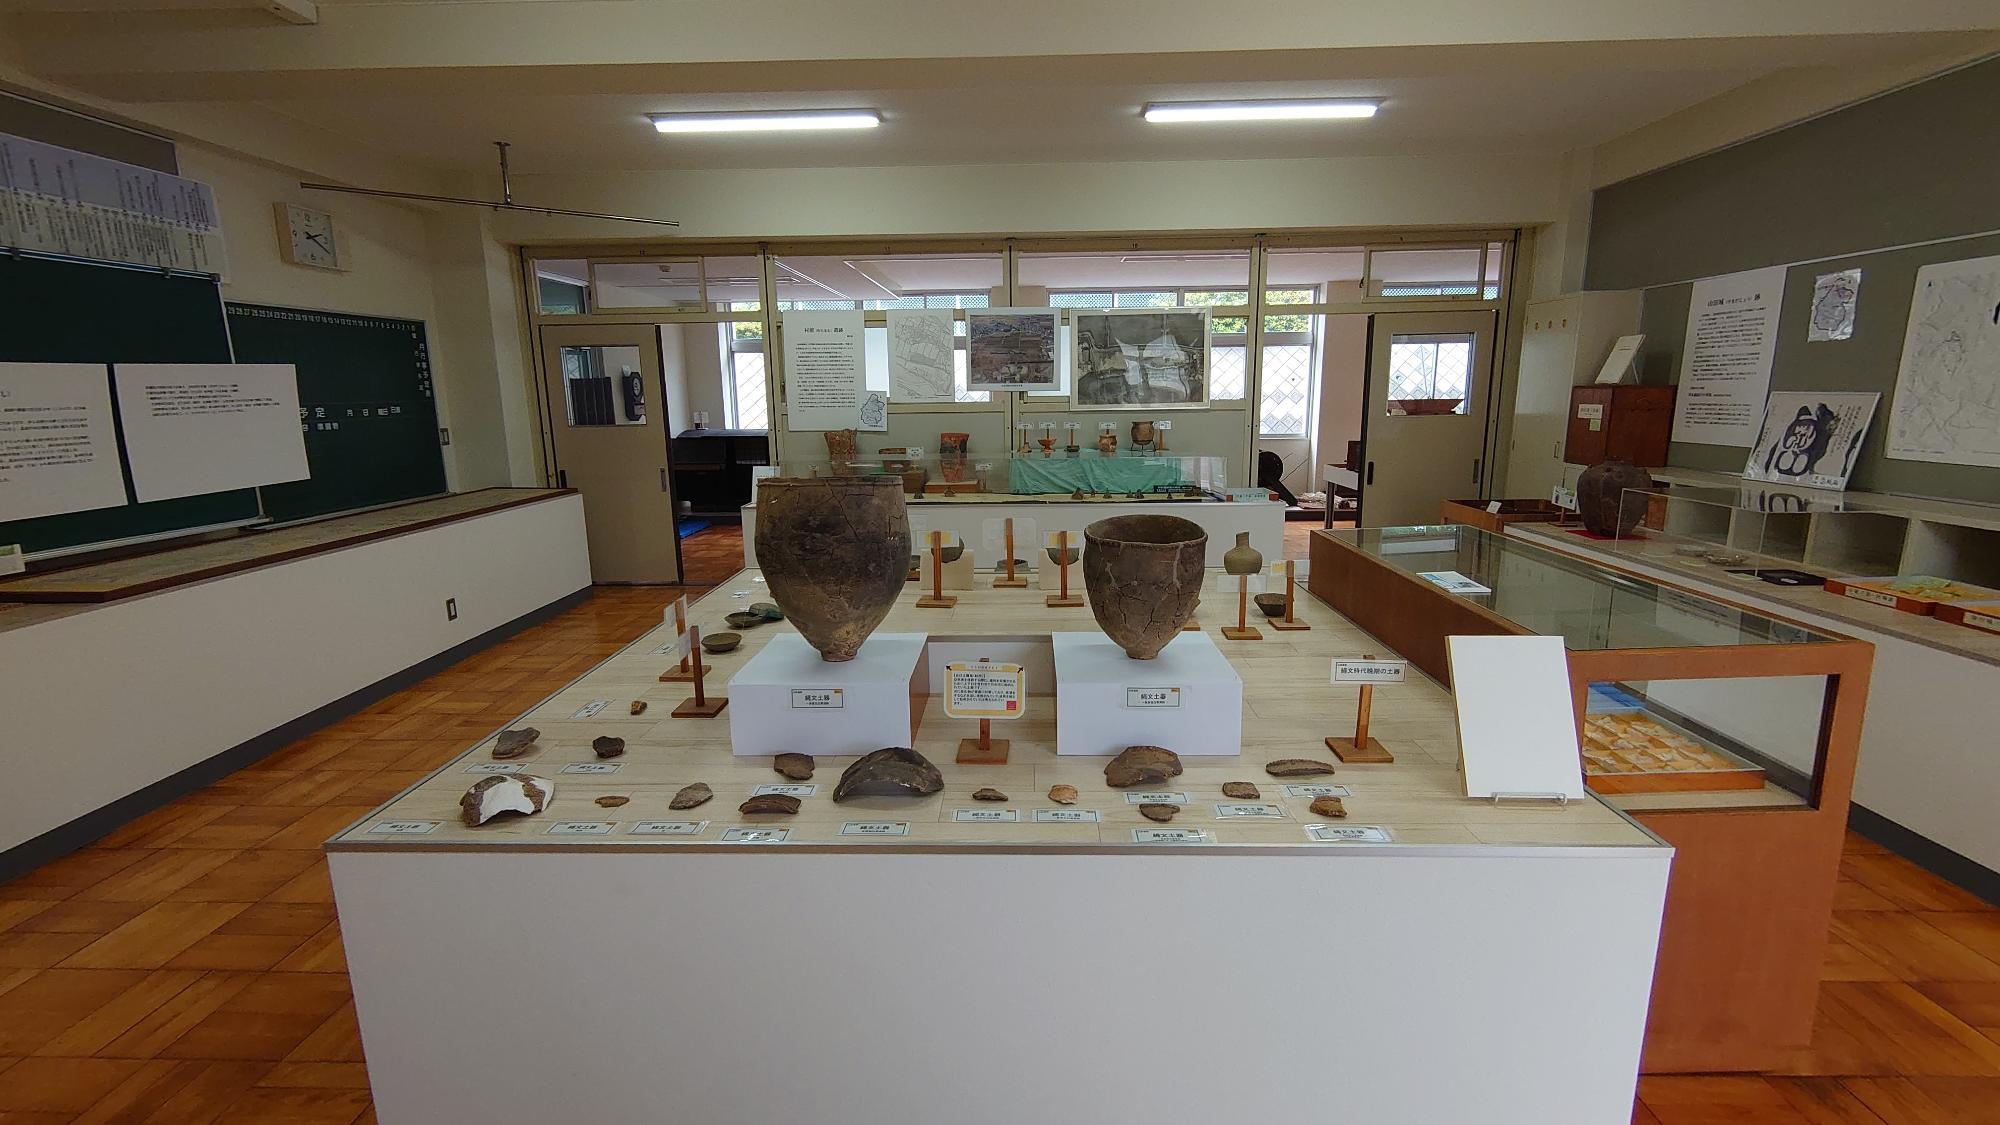 発掘出土品を展示している元教室を利用した東員町郷土資料館内部の写真2